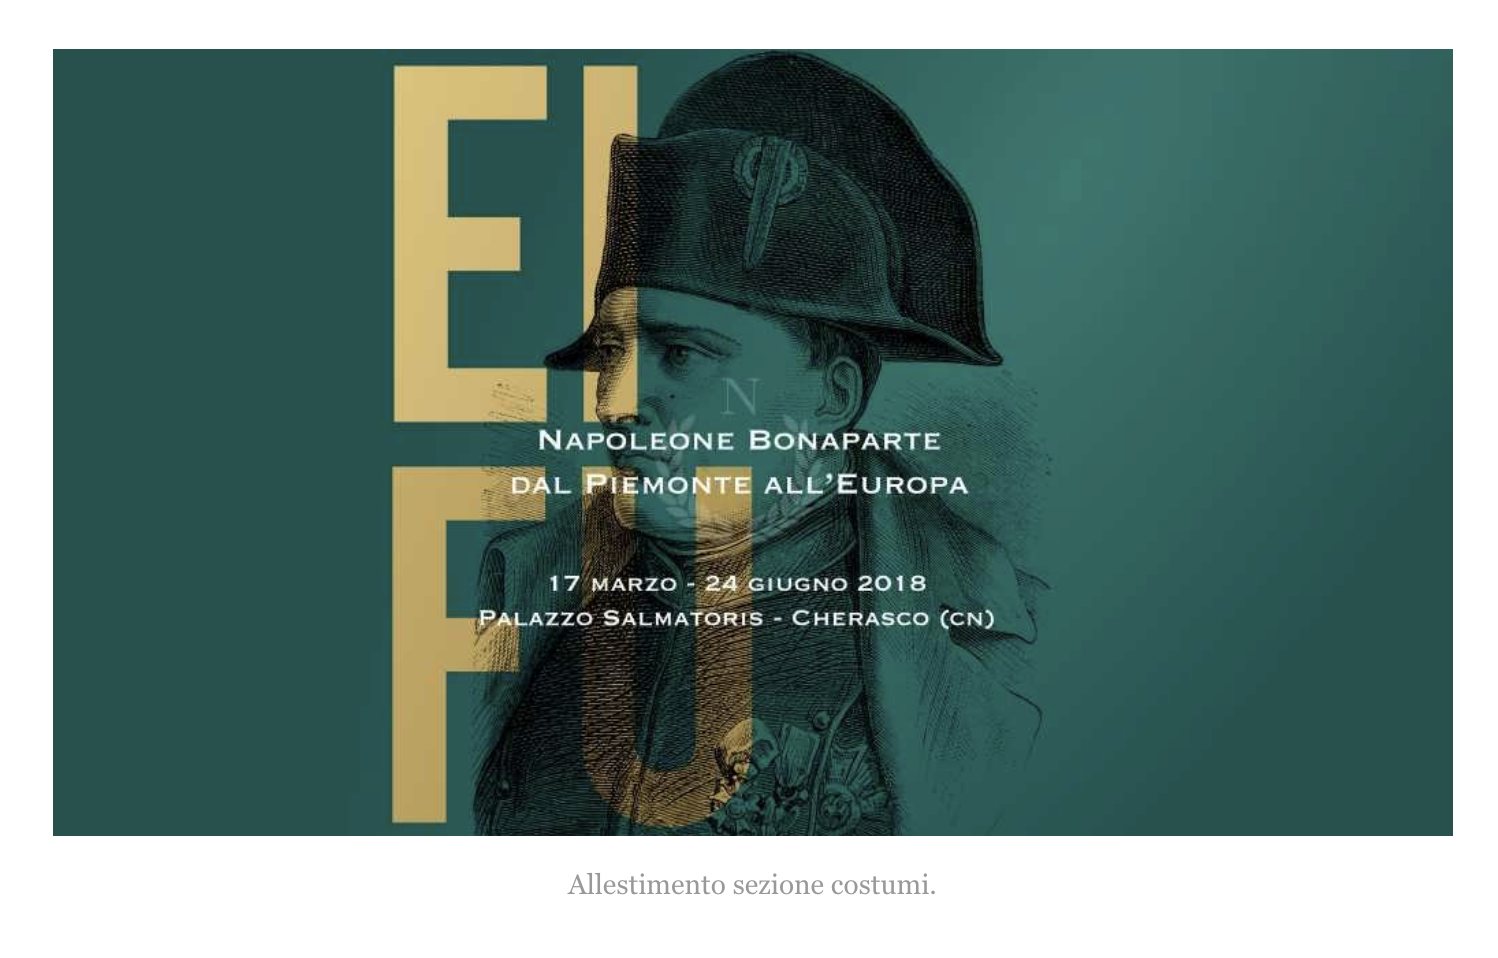 Nel marzo 2018 allestisce la sezione costumi nell’ambito della mostra ”Napoleone Bonaparte dal Piemonte all’Europa” presso Palazzo Salmatoris a Cherasco. I suoi contributi scientifici appaiono all’interno del catalogo della mostra.